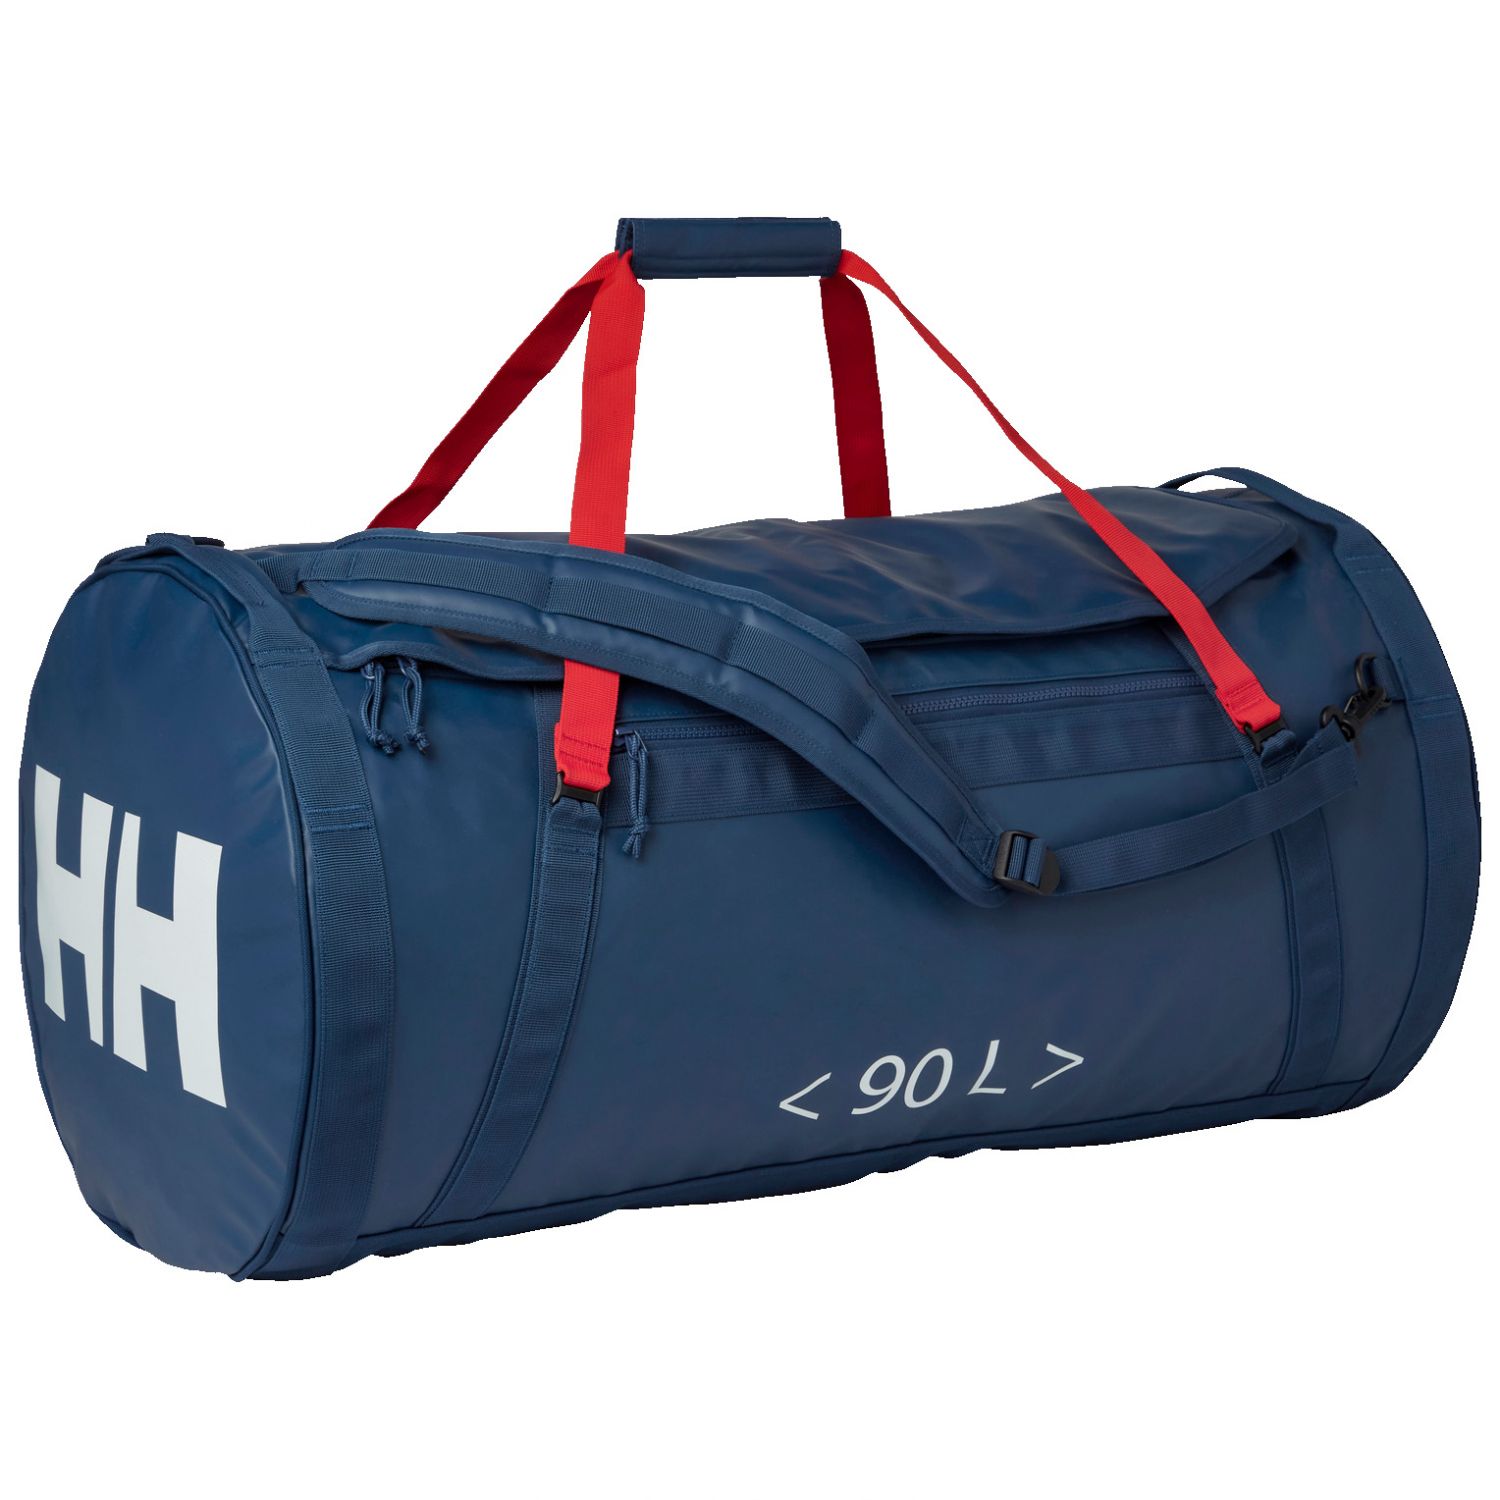 Brug Helly Hansen HH Duffel Bag 2, 90L, ocean til en forbedret oplevelse